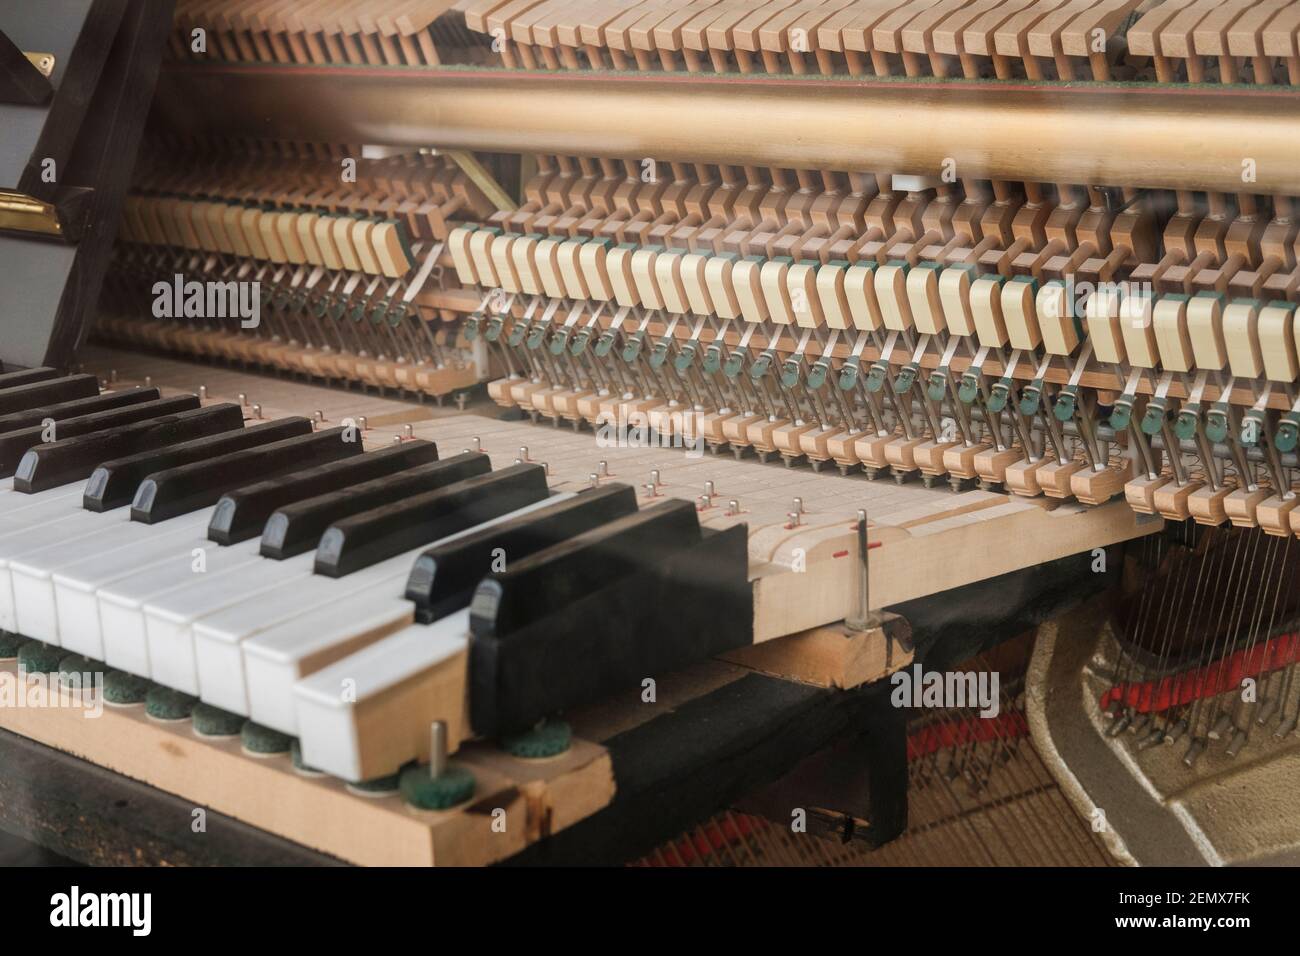 El interior de un piano es una hazaña de la ingeniería, el marco de cuerda contiene 30 toneladas de tensión, creado por alrededor de 230 cuerdas que componen 88 pasos. Th Foto de stock